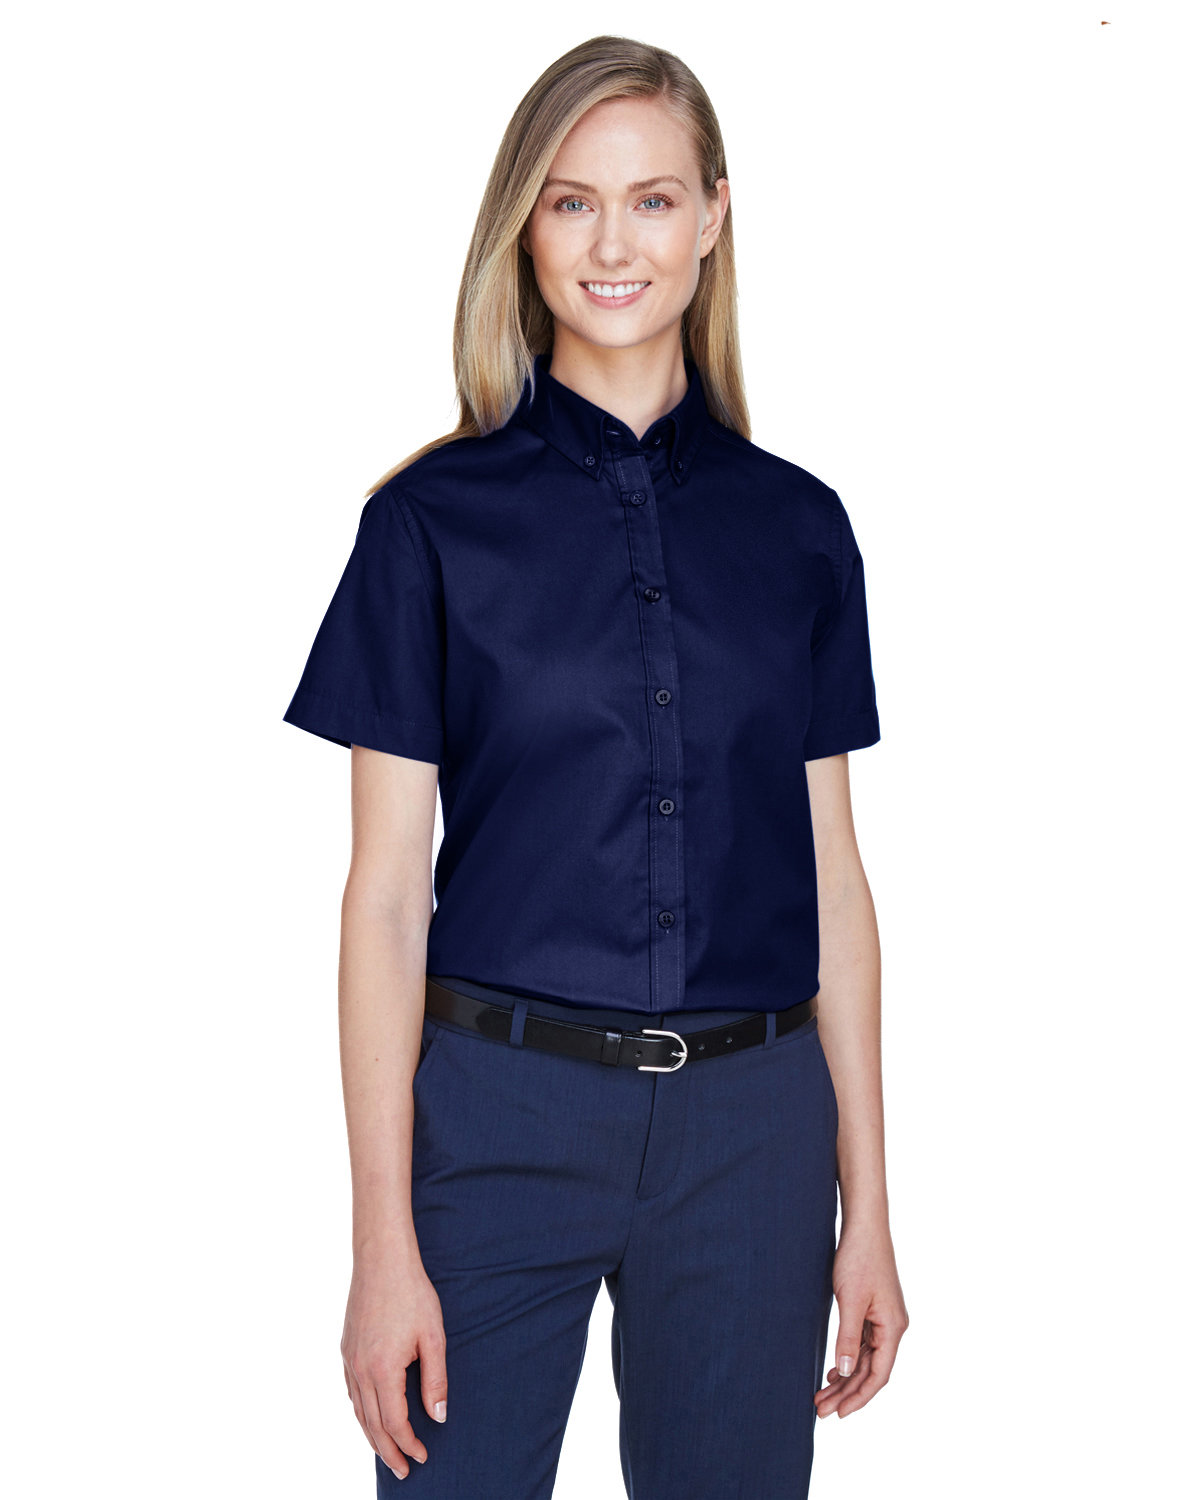 Core365 Ladies' Optimum Short-Sleeve Twill Shirt CLASSIC NAVY 